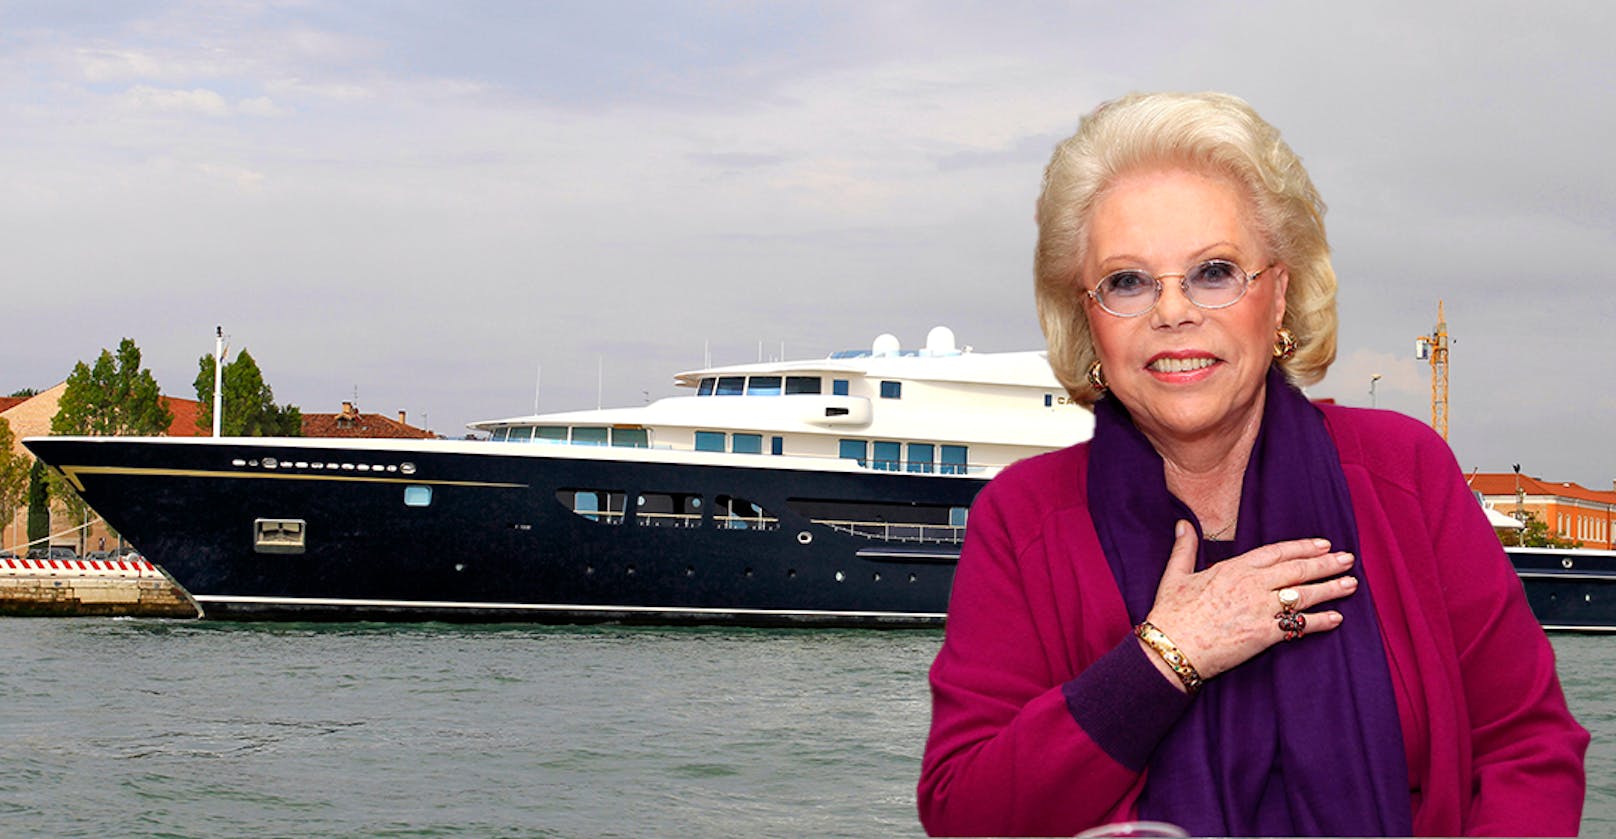 Luxus-Yacht von Heidi Horten um 95 Mio. Euro verkauft